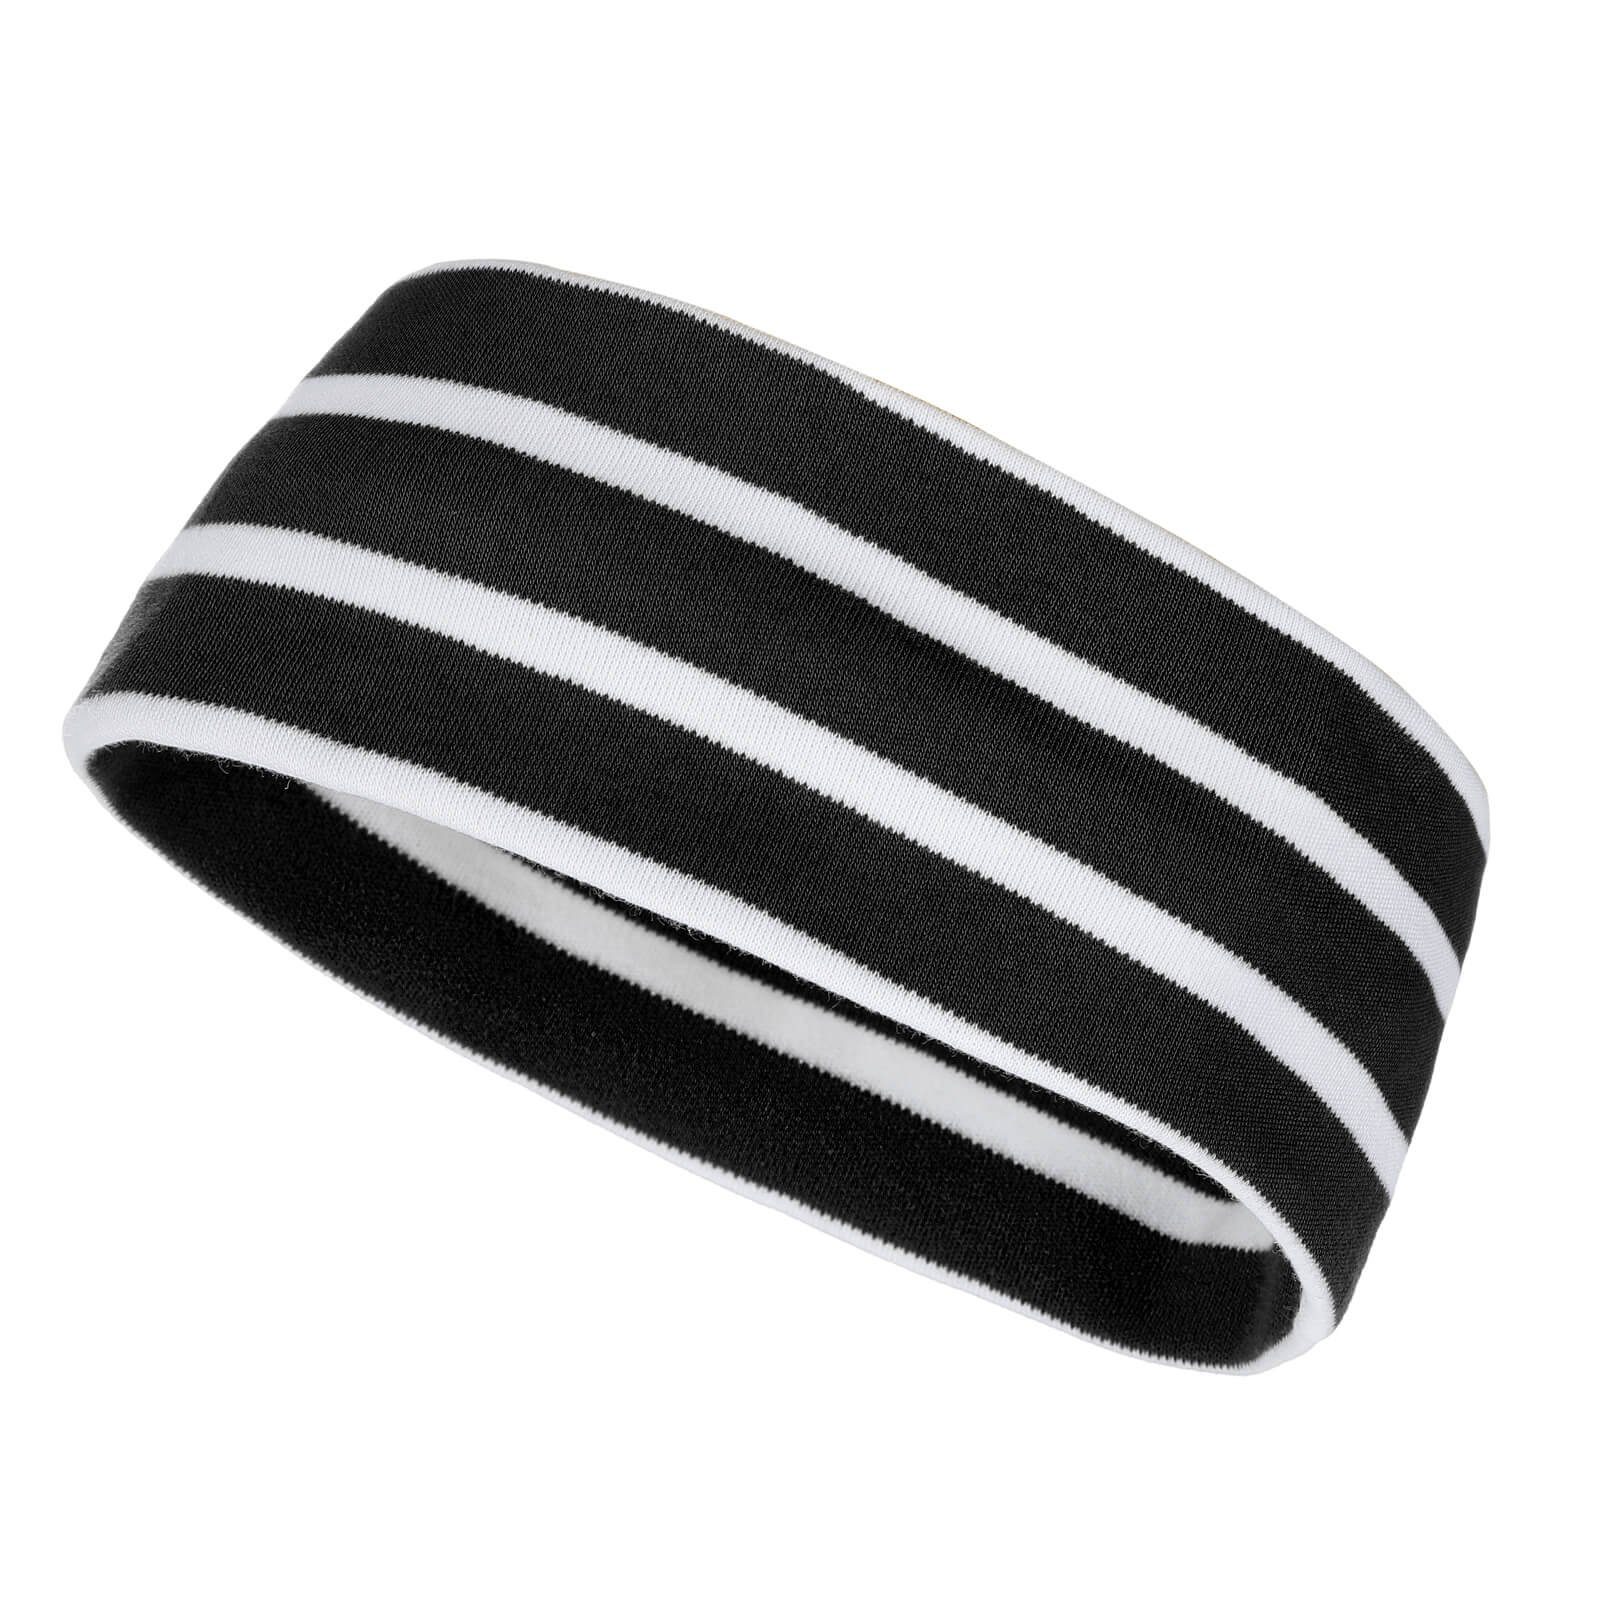 modAS Stirnband Unisex Kopfband Maritim für Kinder und Erwachsene zweilagig Baumwolle (99) schwarz / weiß